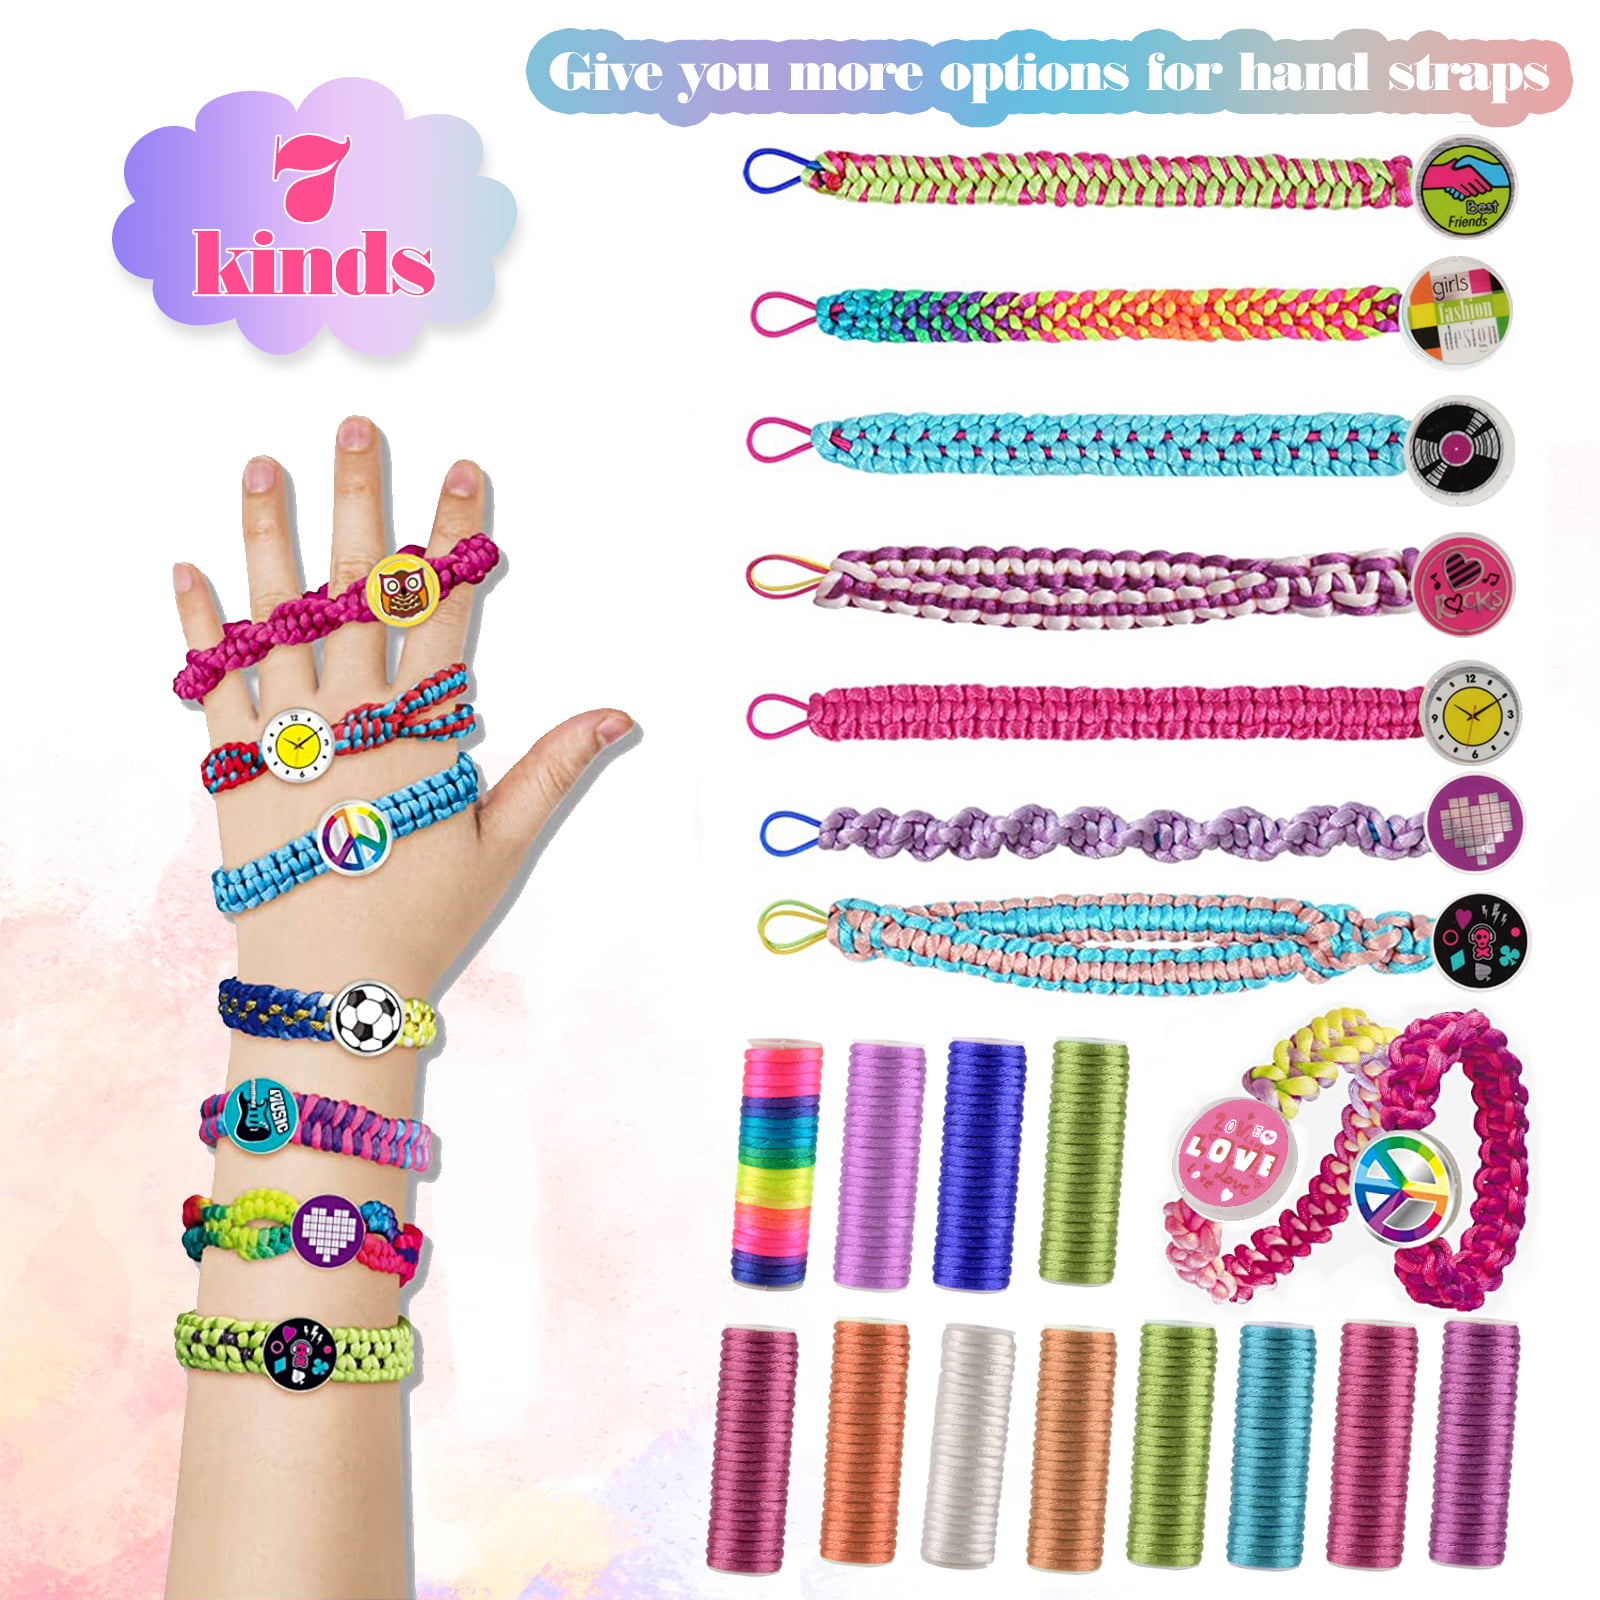 LMAZG Friendship Bracelet Making Kit, Art Kits for Kids 7-12 Girls, Jewelry  Making Kit for Girls 7-12 Year Old, Friendship Bracelets Kits for Girl